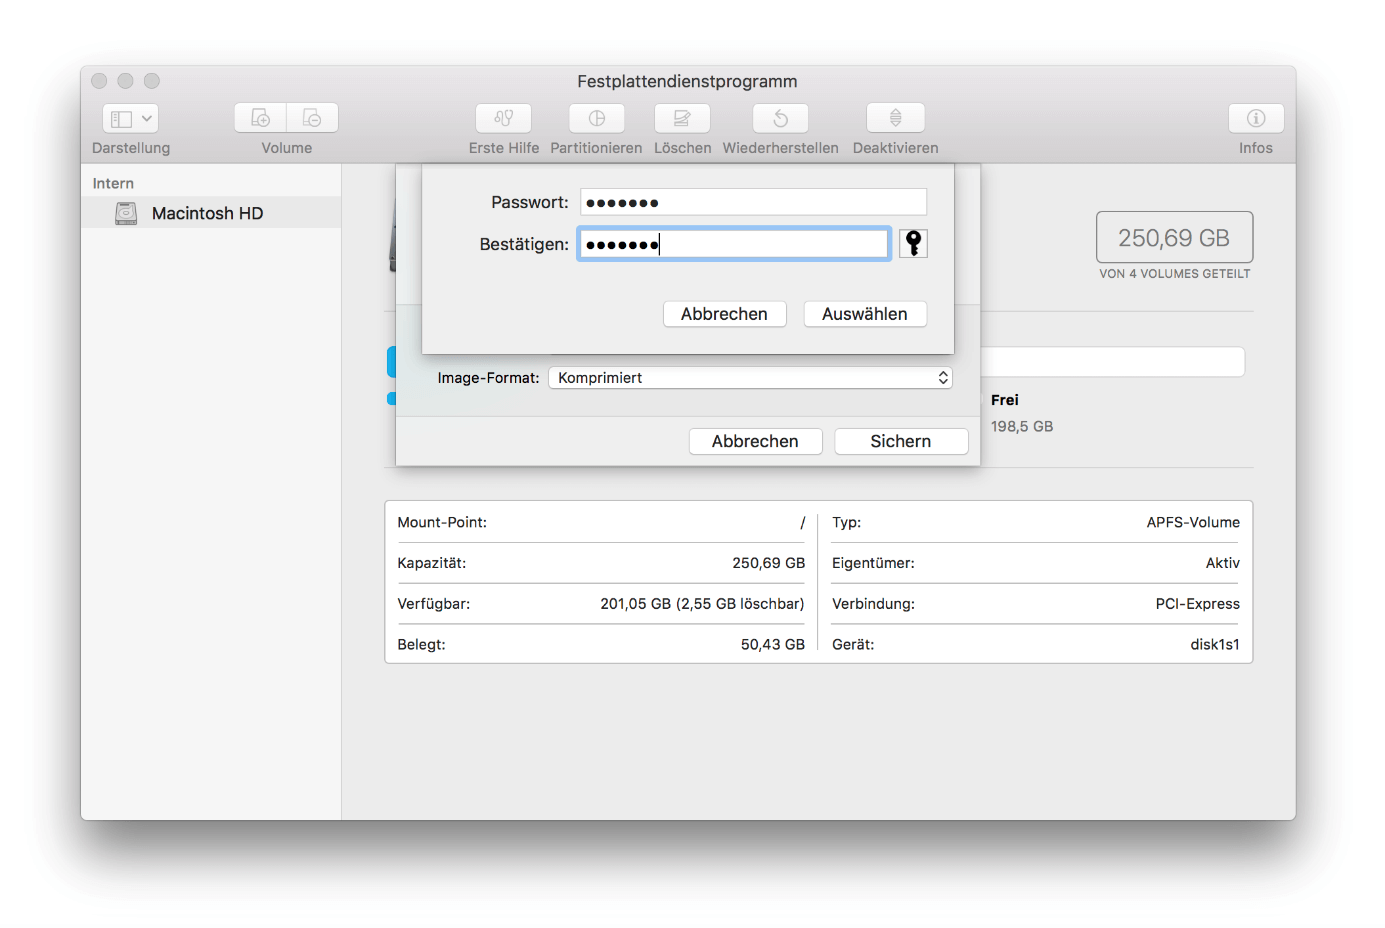 macOS-Festplattendienstprogramm: Passworteingabe